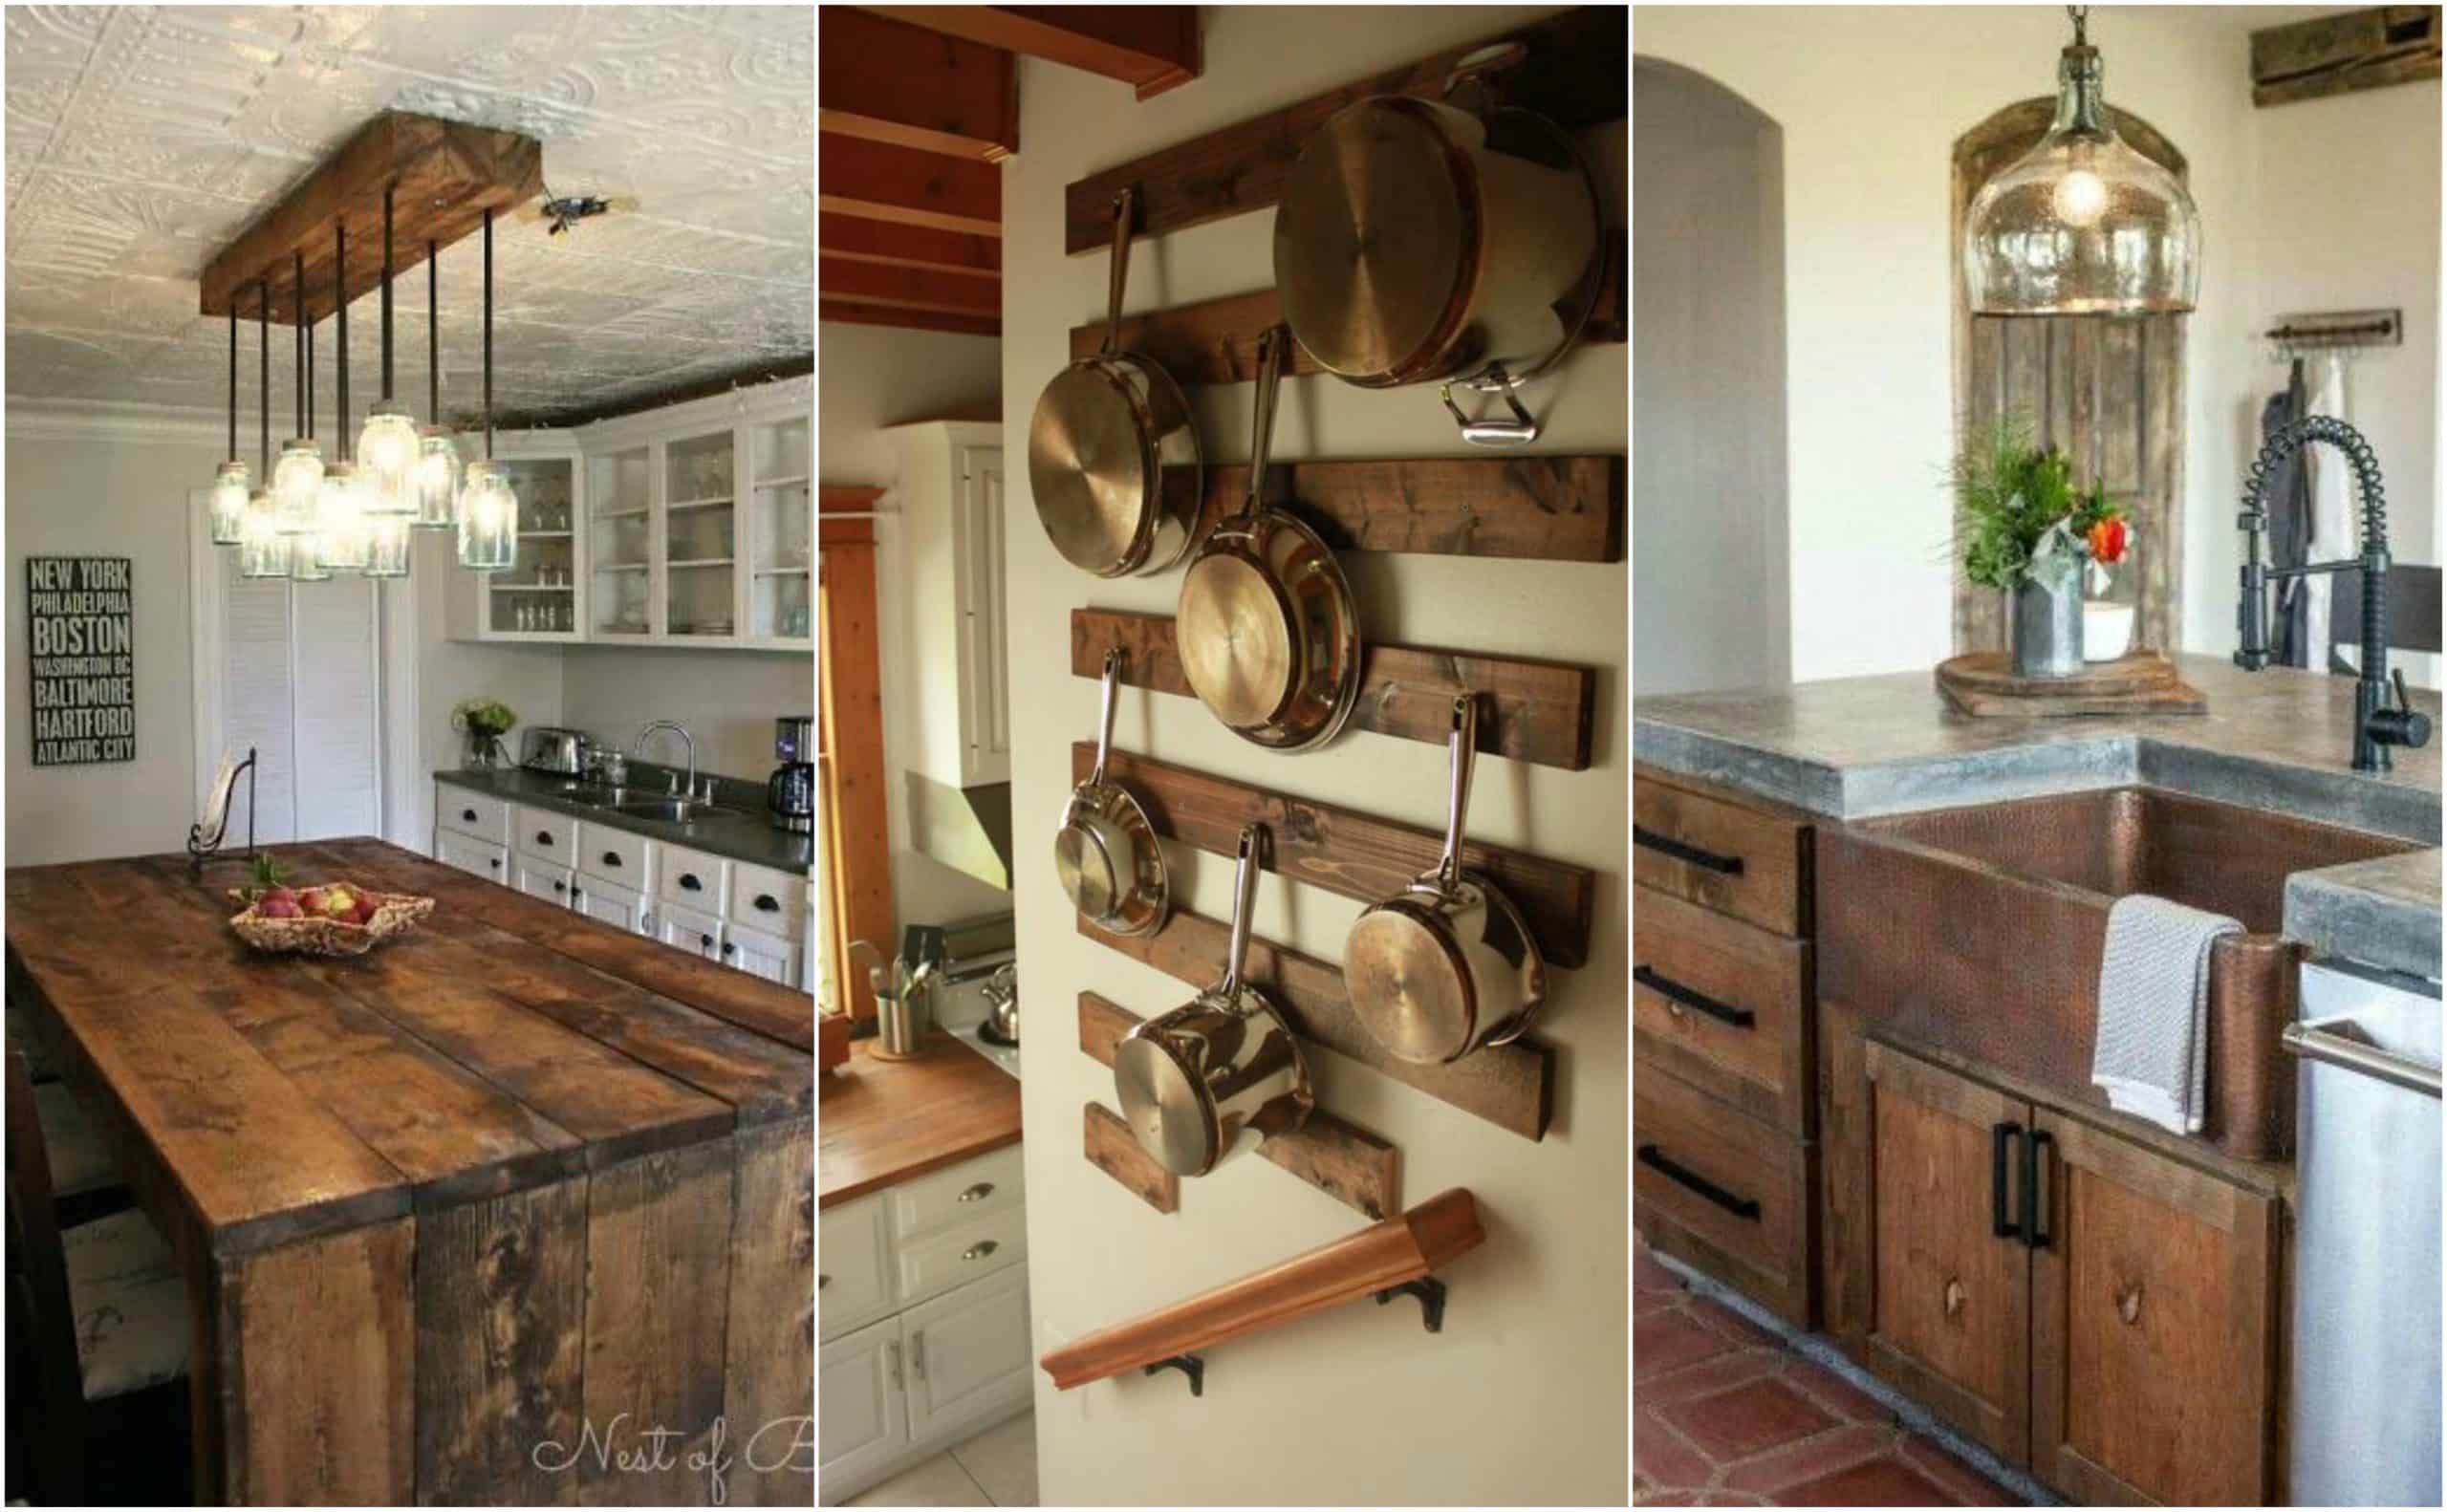 cozinhas decoradas estilo rustico